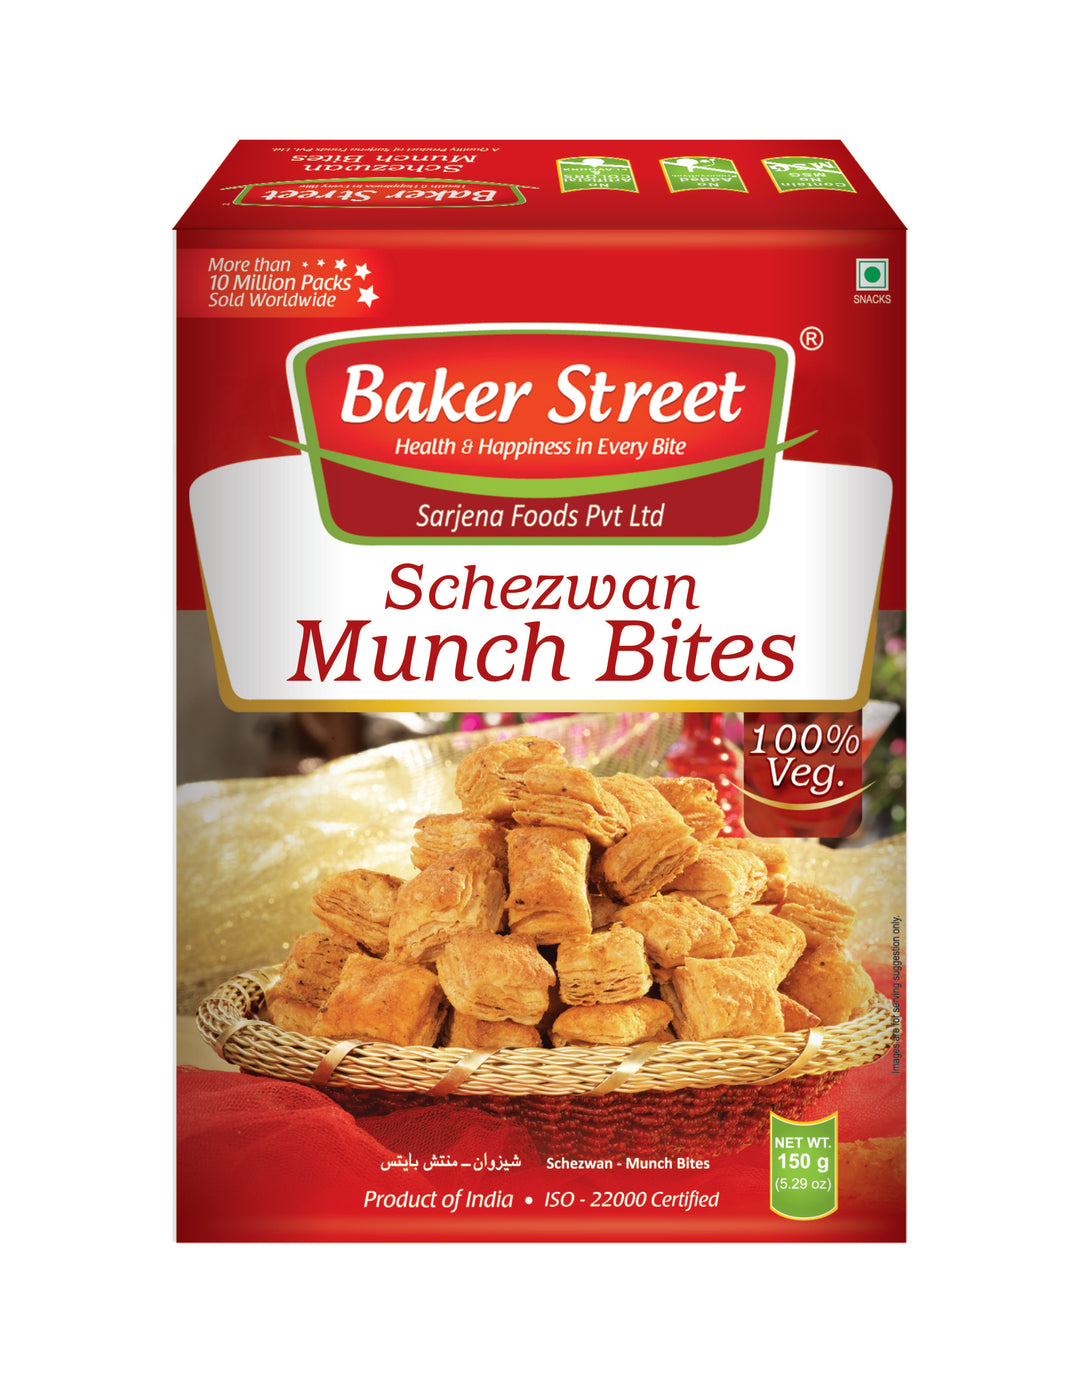 Schezwan Munch Bites